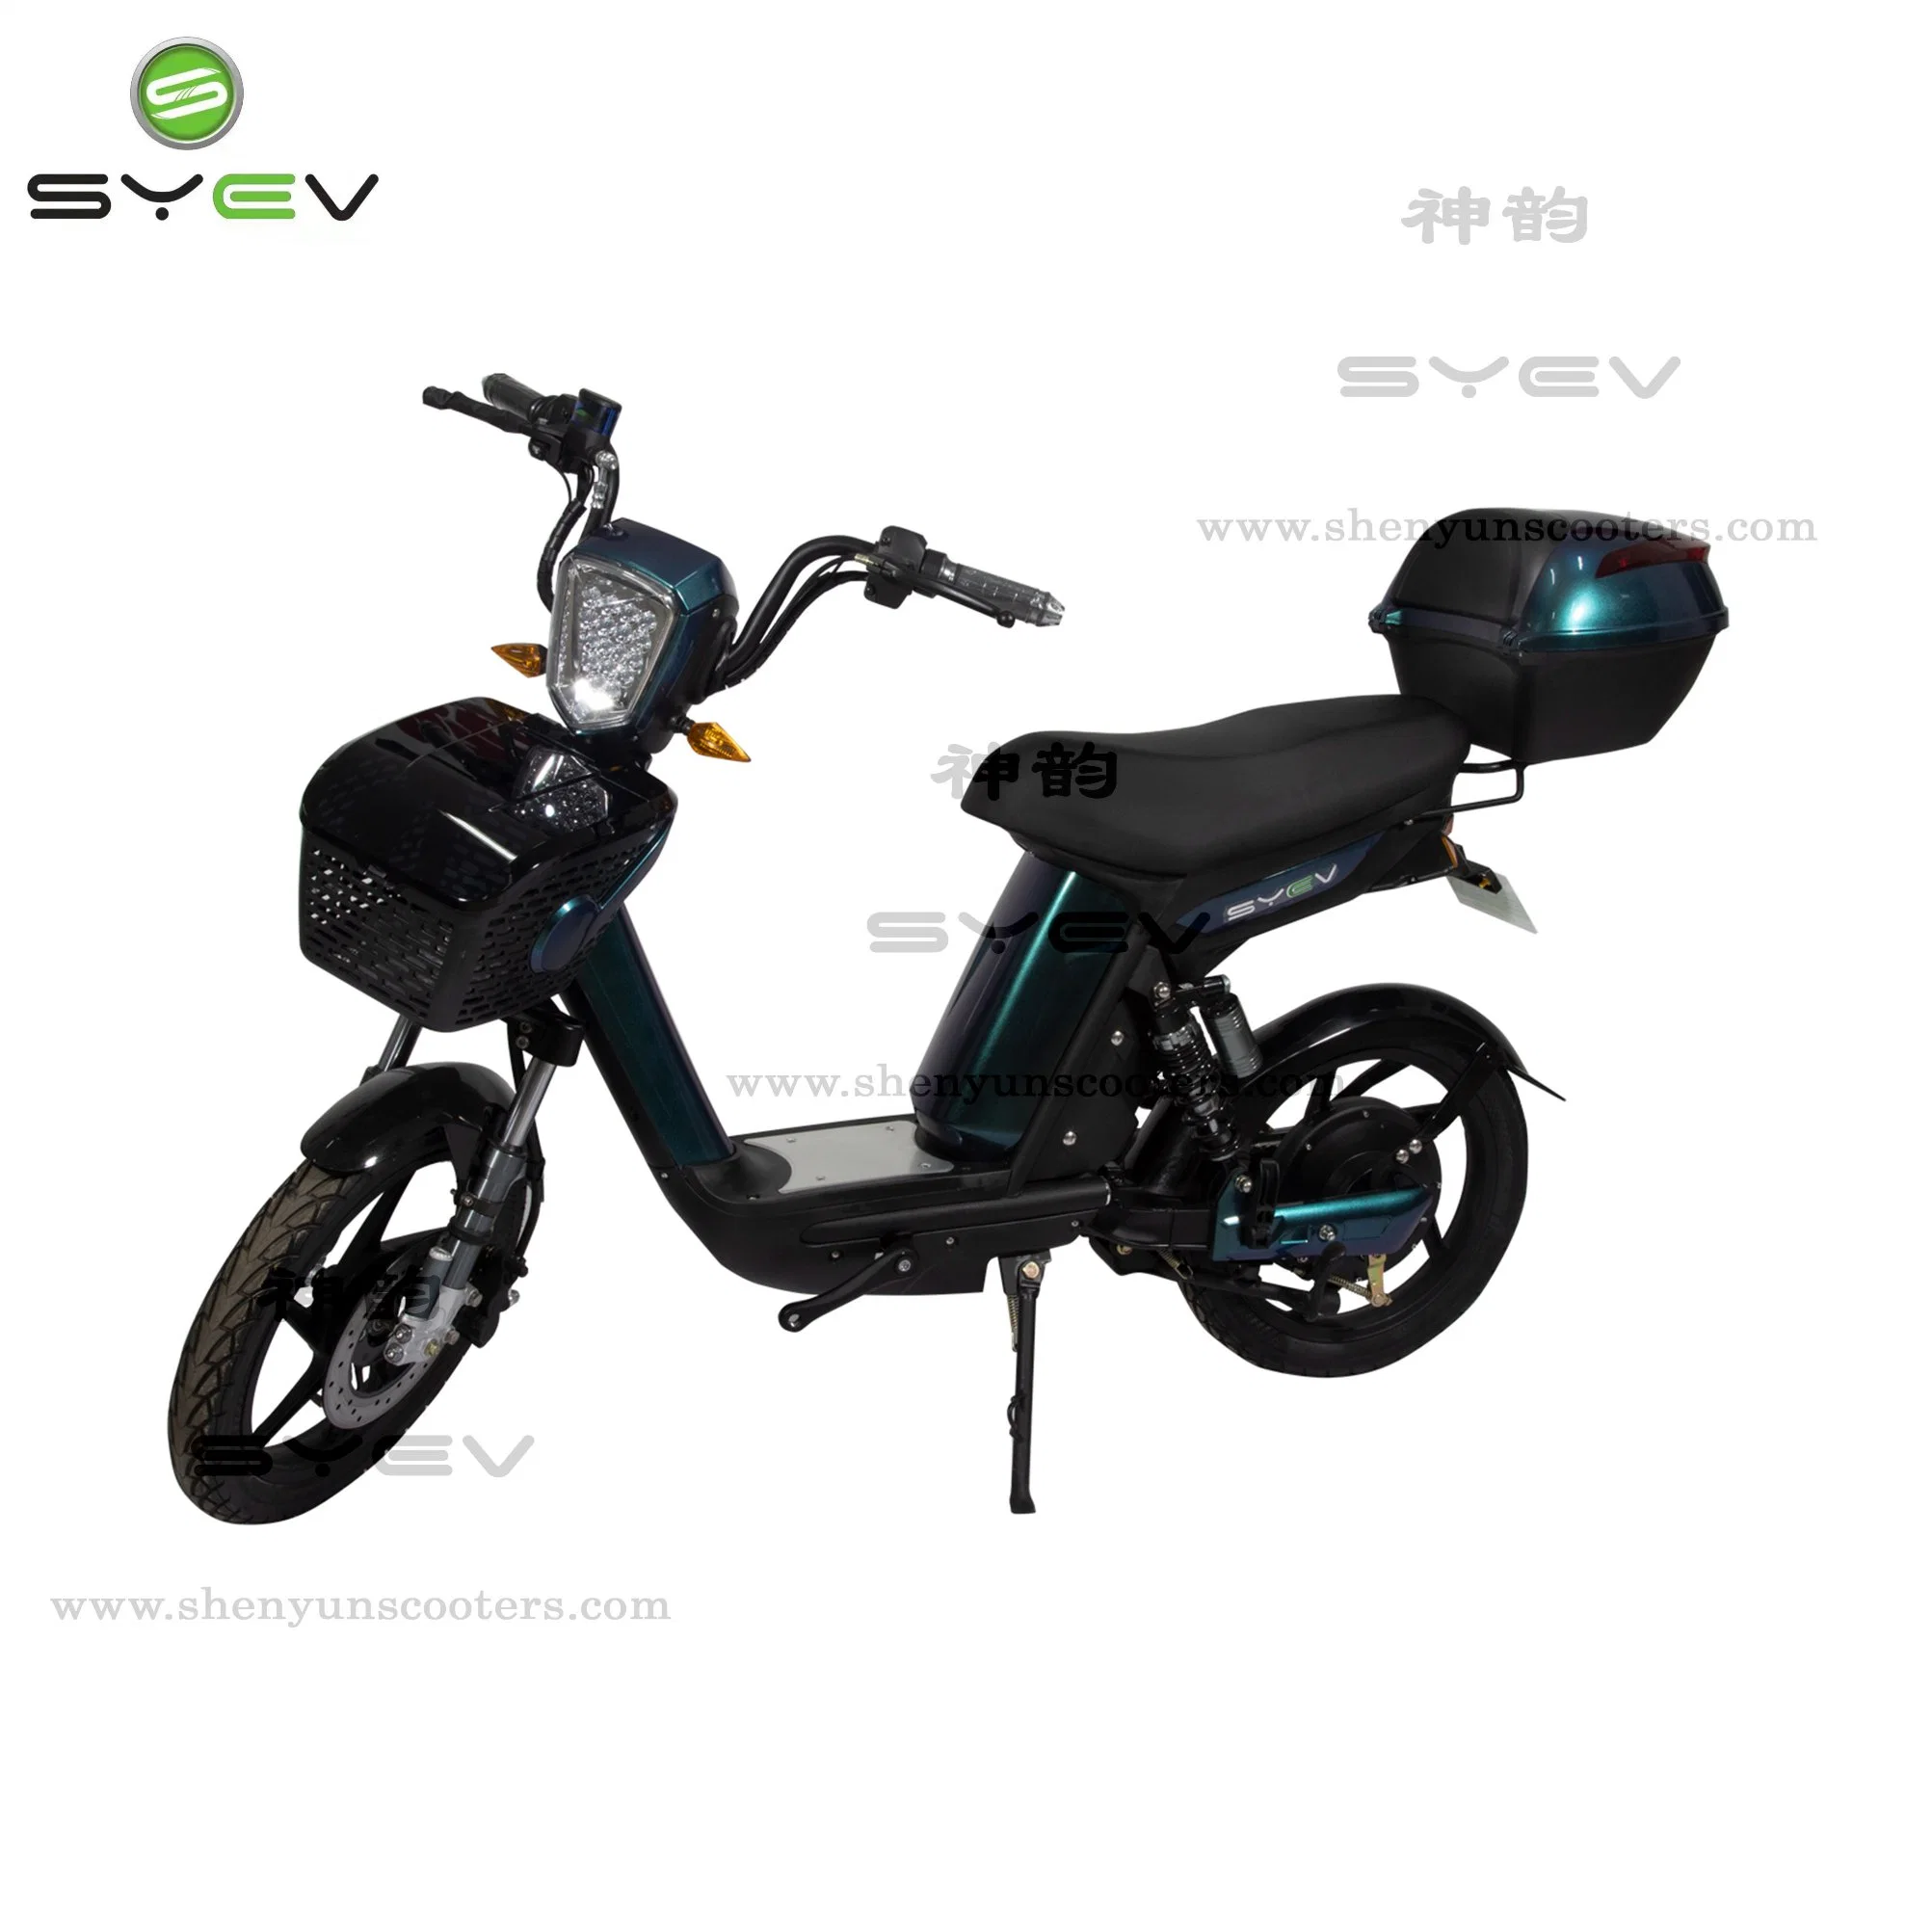 Syev banheira na venda de bicicletas eléctricas com 48V / 12Ah, velocidade 35km / h gama 30-40km, Scooter Eléctrico certificado CE